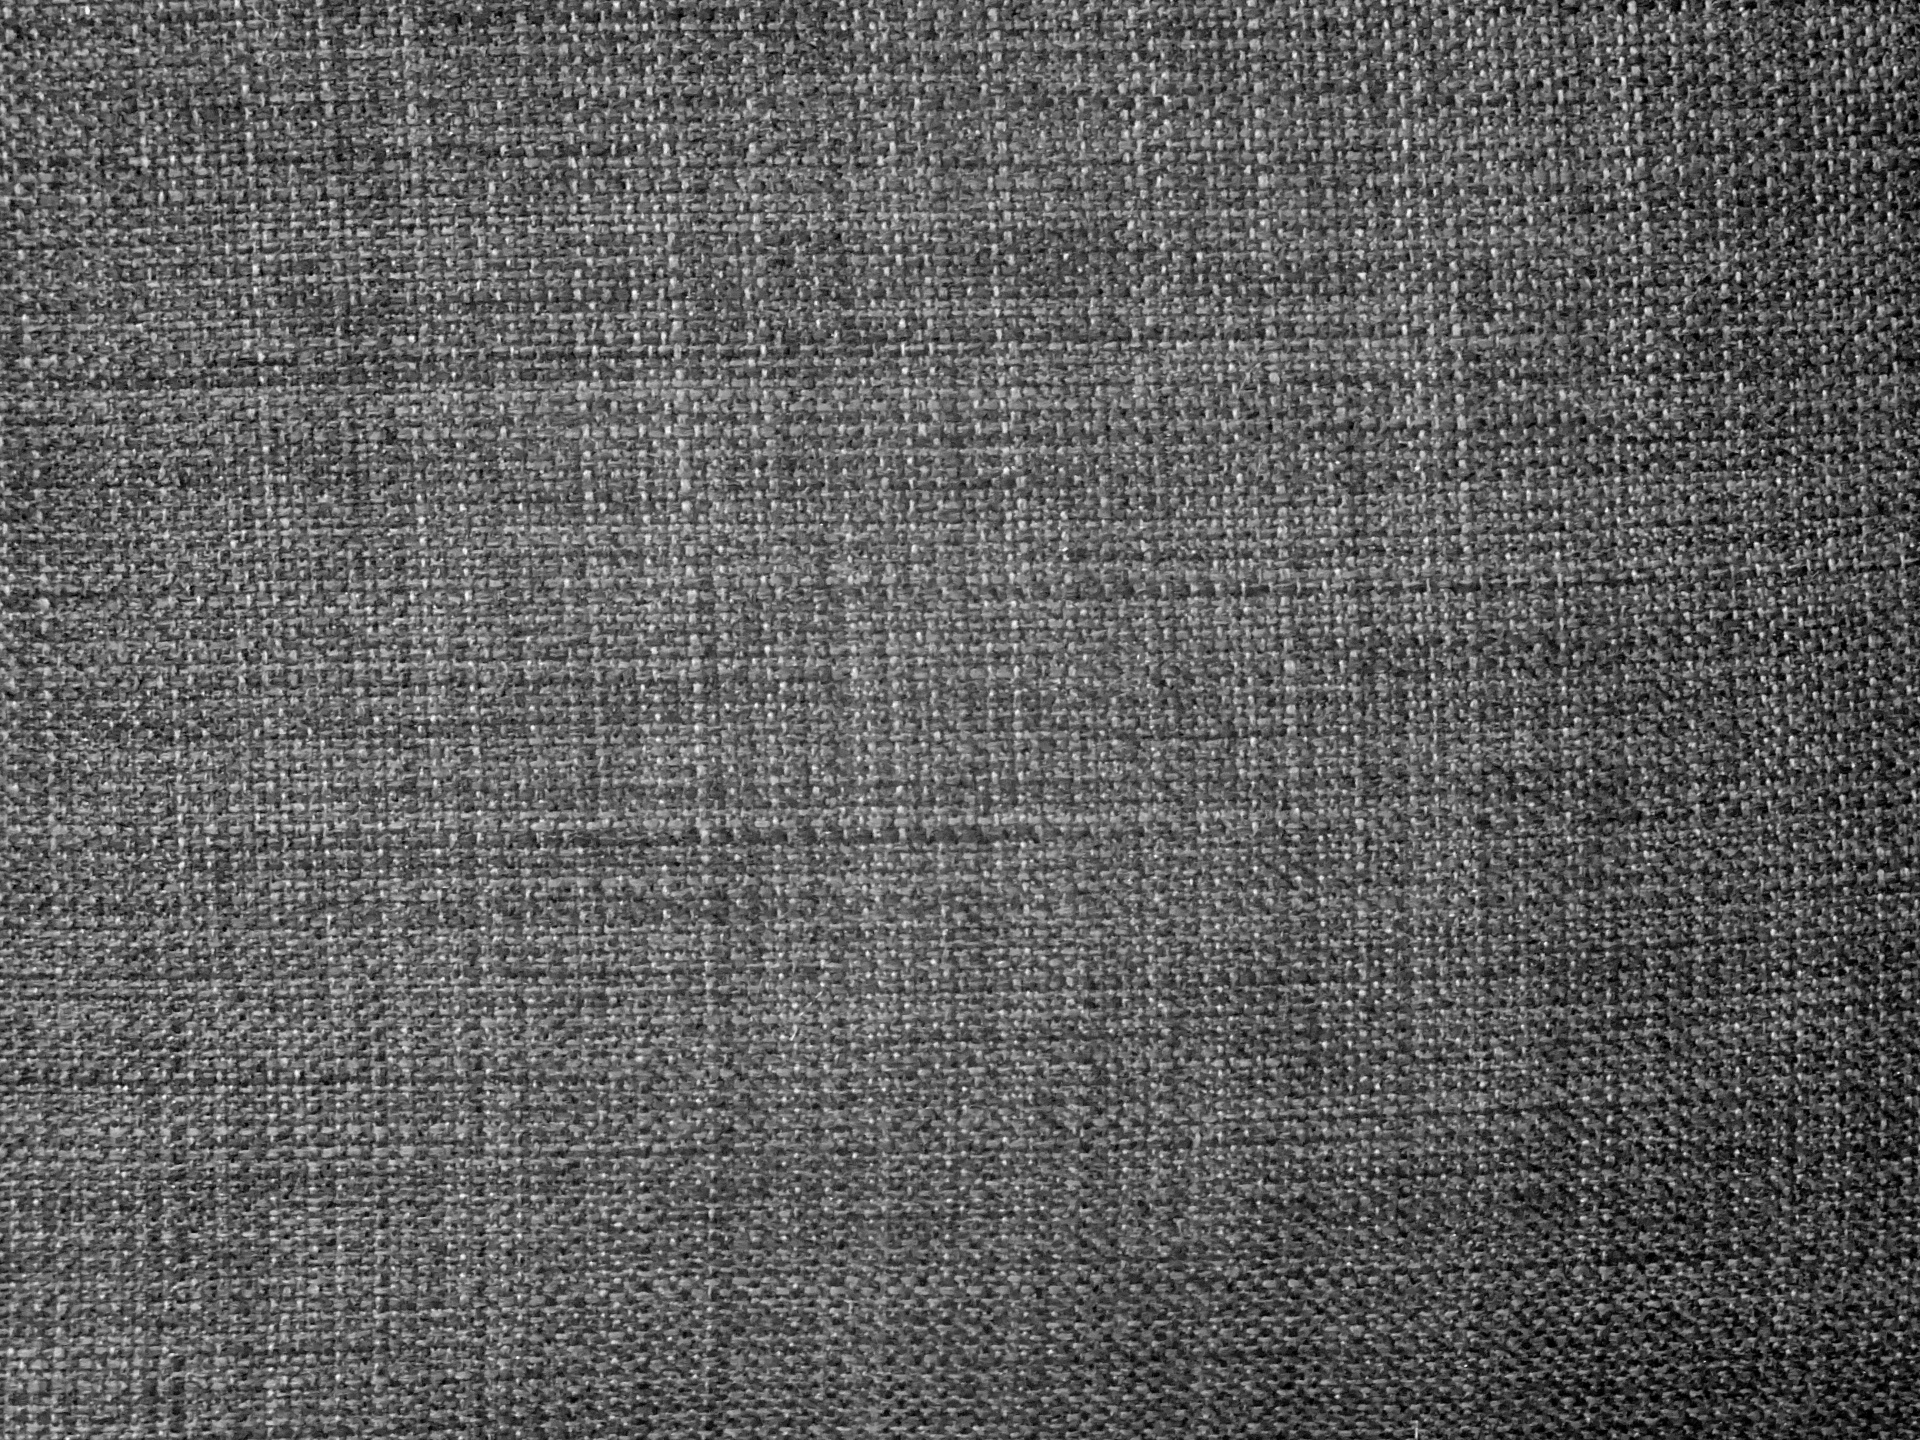 Fondo gris con textura de la tela